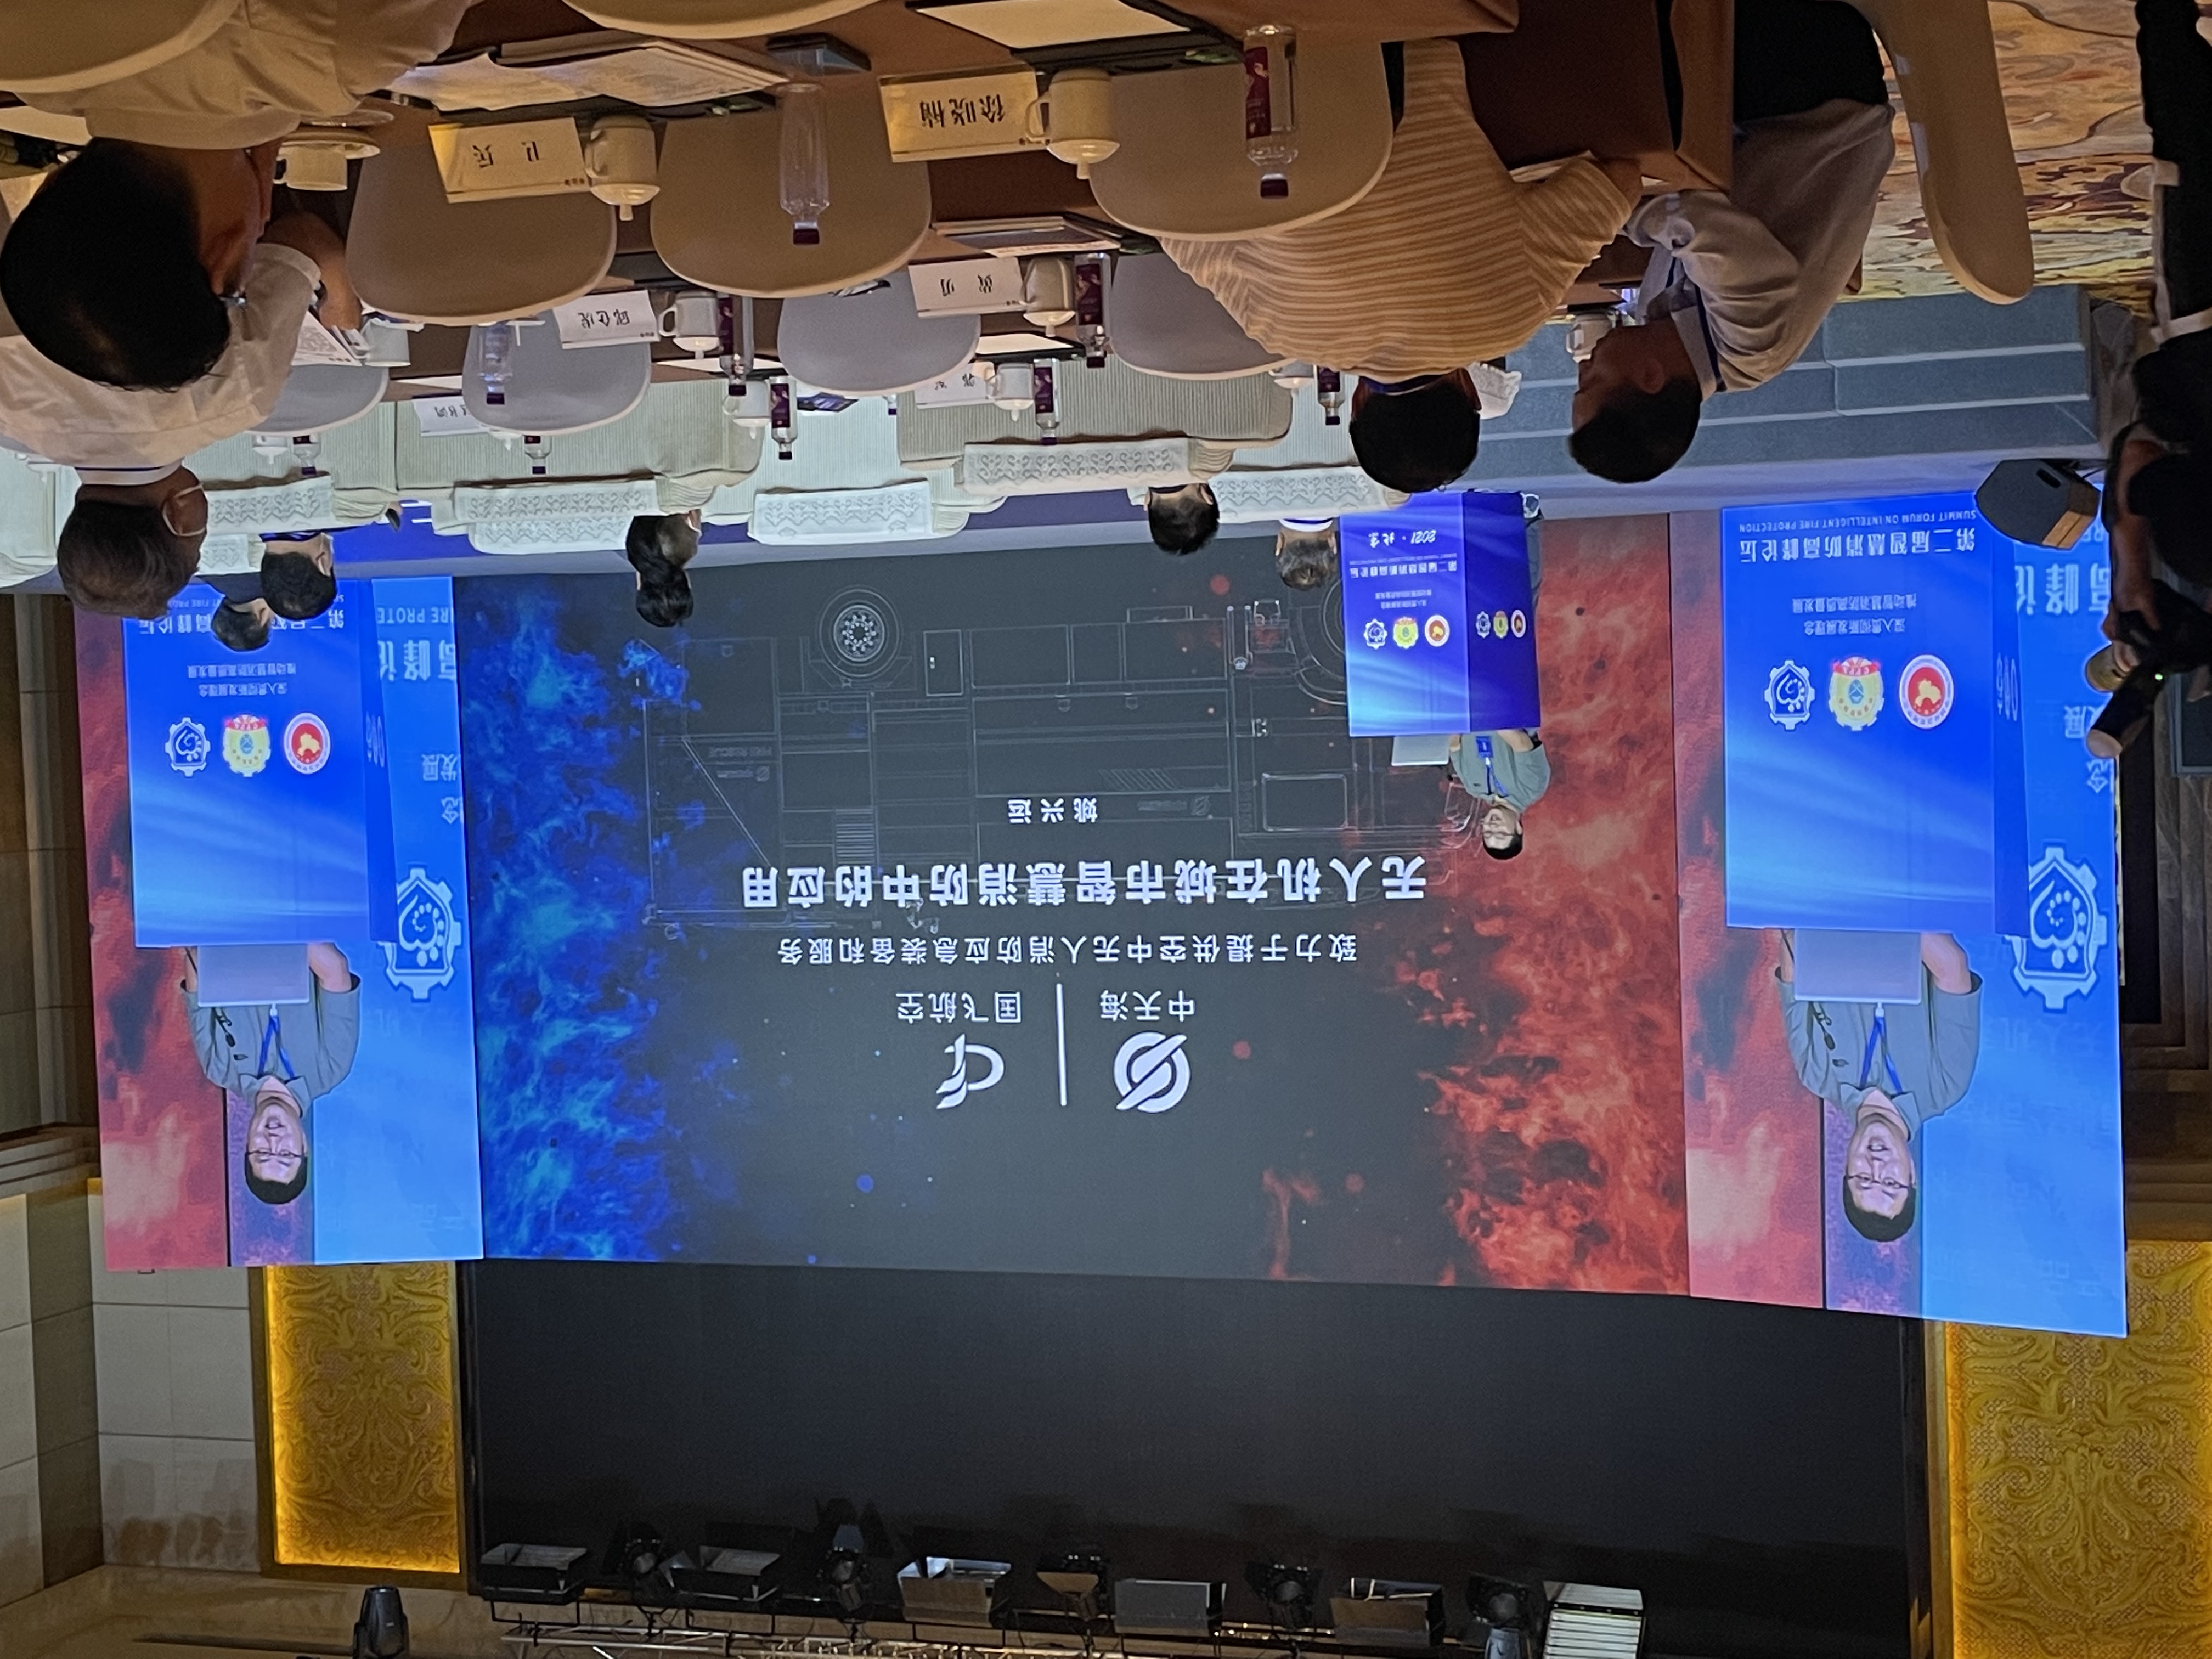 第二届智慧消防高峰论坛在北京召开，我公司参展并就“无人机在智慧消防中的应用”开展主题报告